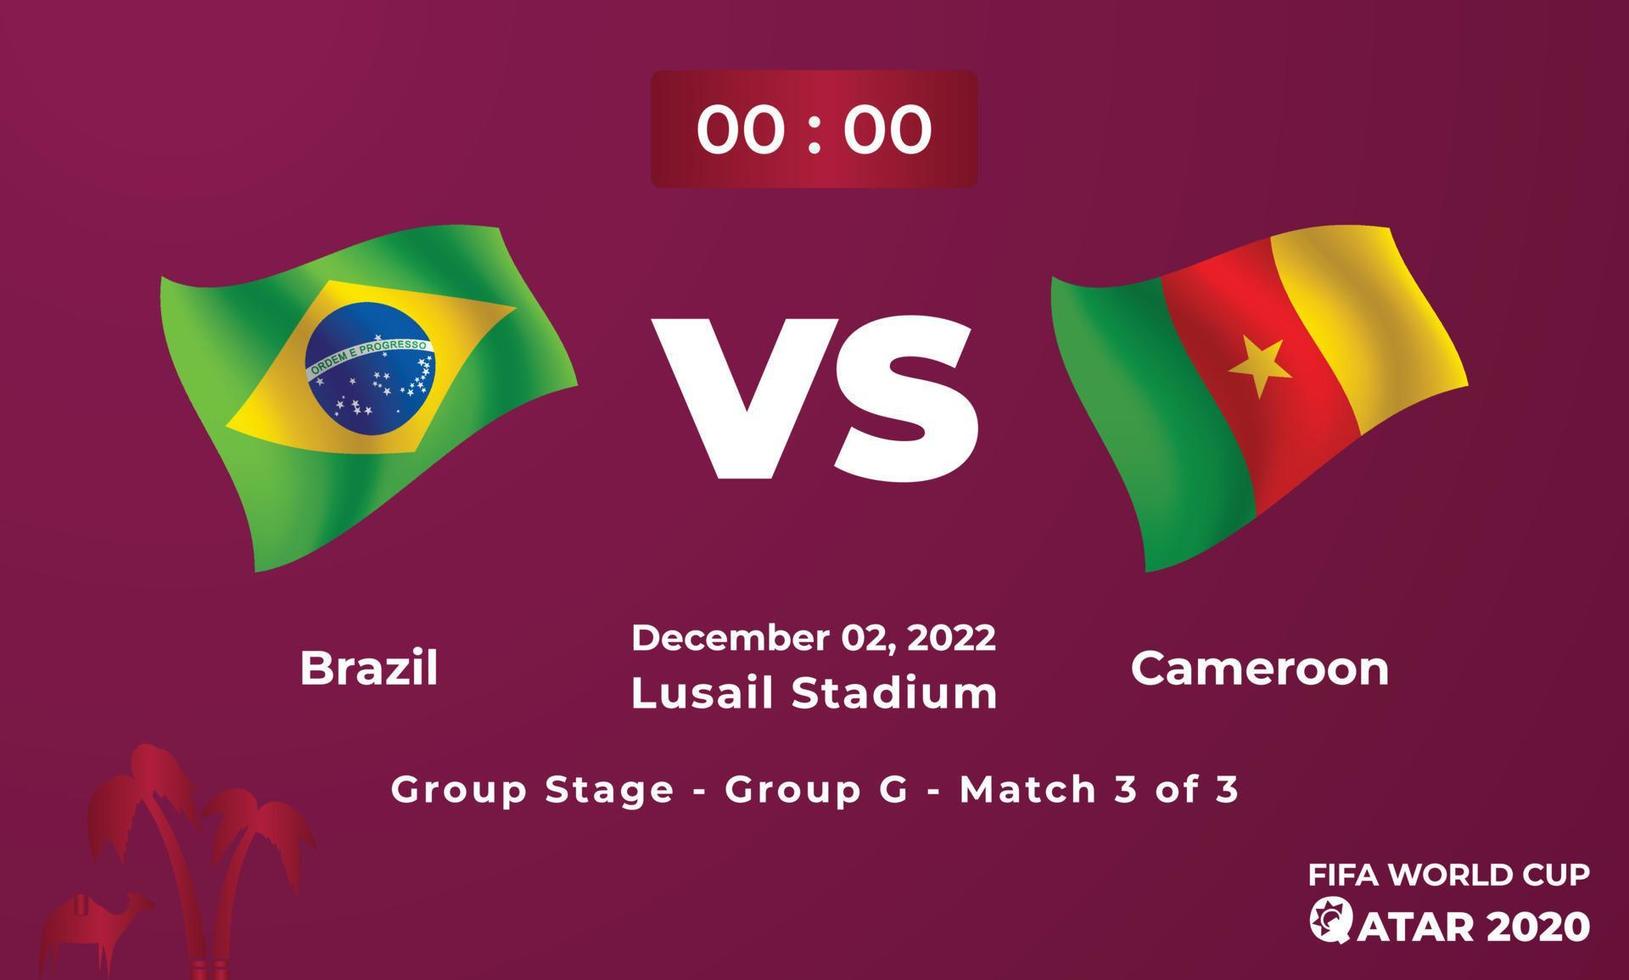 brasilien vs. kamerun fußballspielvorlage, fifa weltmeisterschaft in katar 2022 vektor